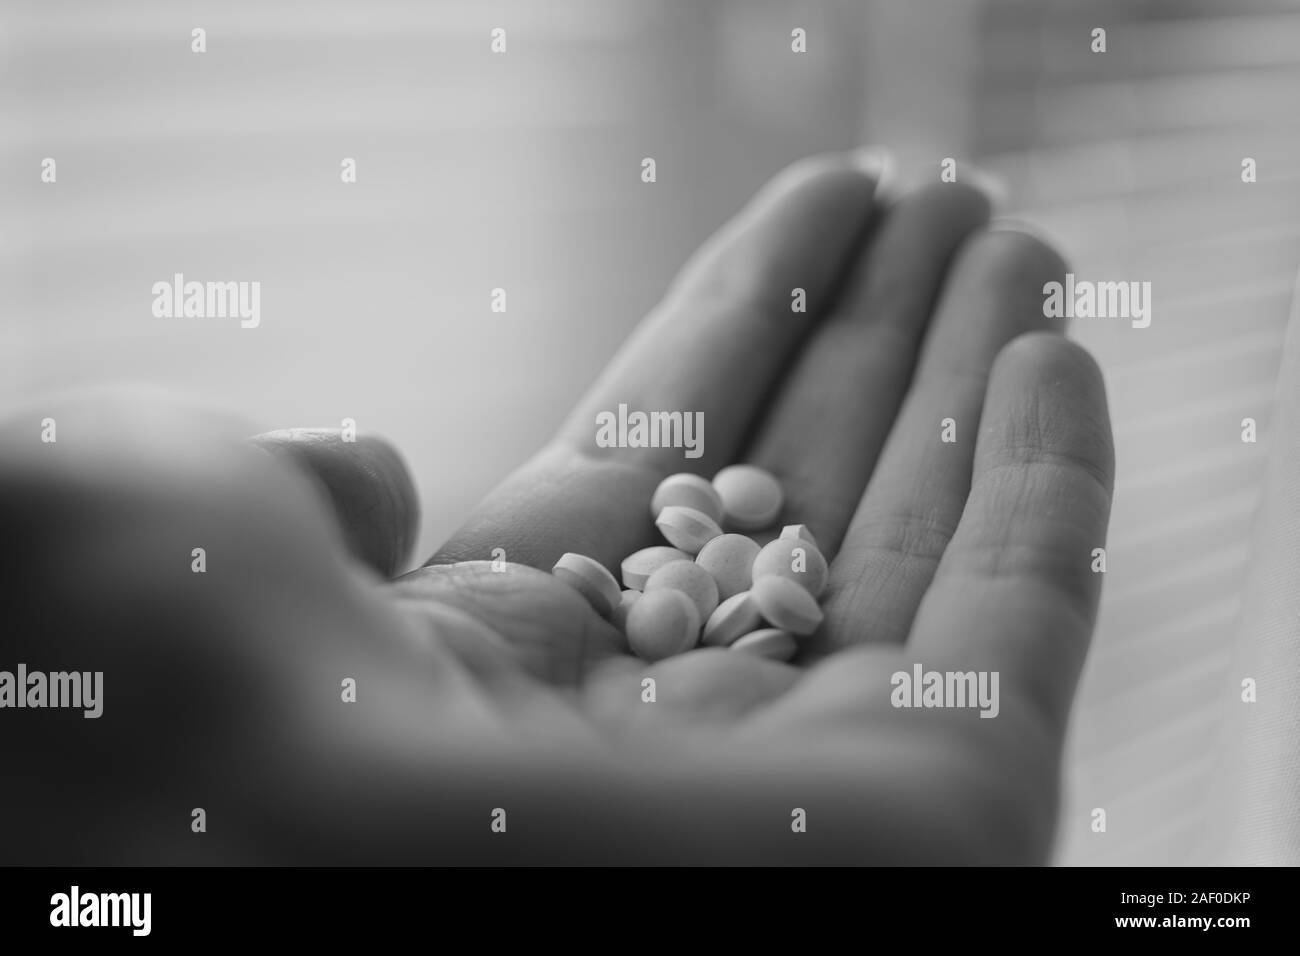 Medizinische Pillen in der menschlichen Hand Nahaufnahme. Vitamine, die in der Palme einer Person. Schwarz-weiß Foto. Behandlung oder Medikamente. Stockfoto